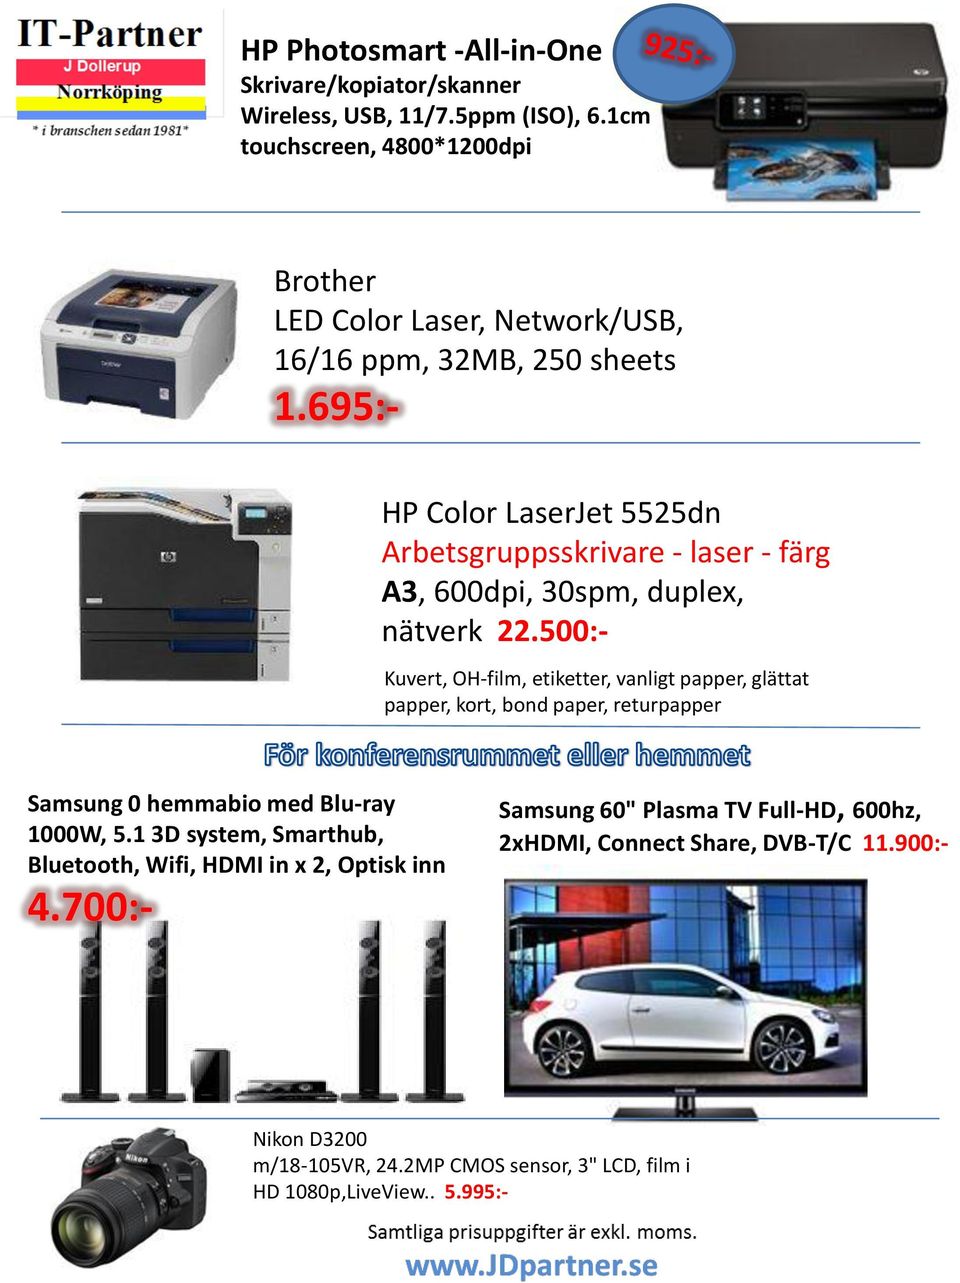 695:- HP Color LaserJet 5525dn Arbetsgruppsskrivare - laser - färg A3, 600dpi, 30spm, duplex, nätverk 22.